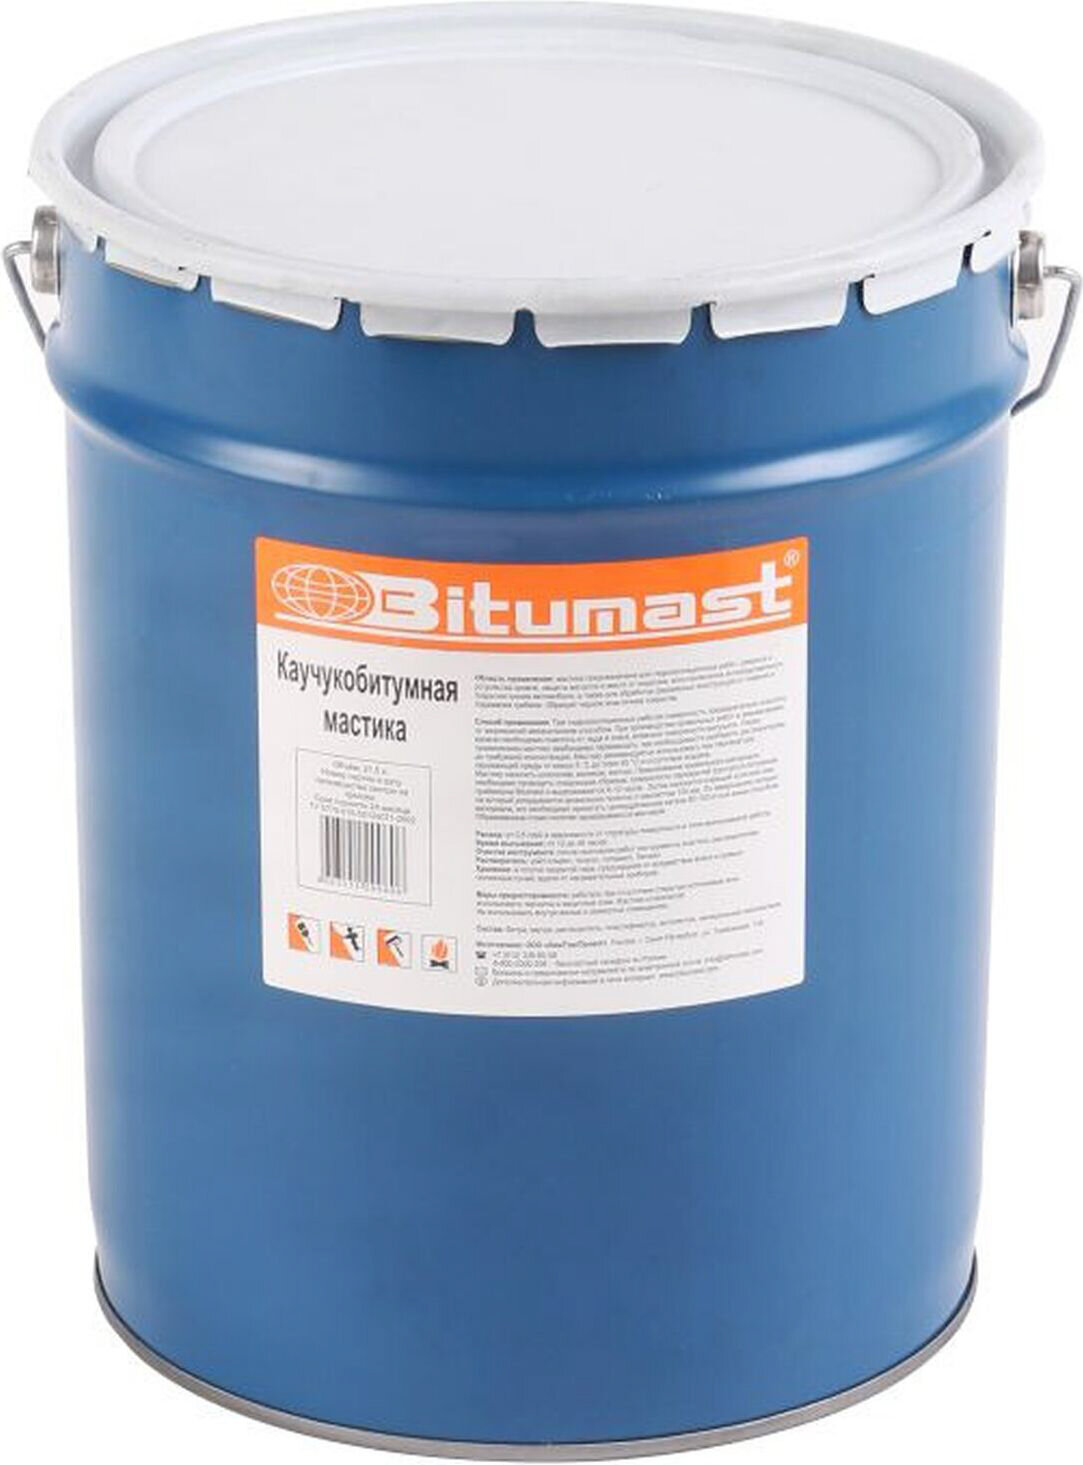 Мастика битумно-каучуковая Bitumast 21,5 л